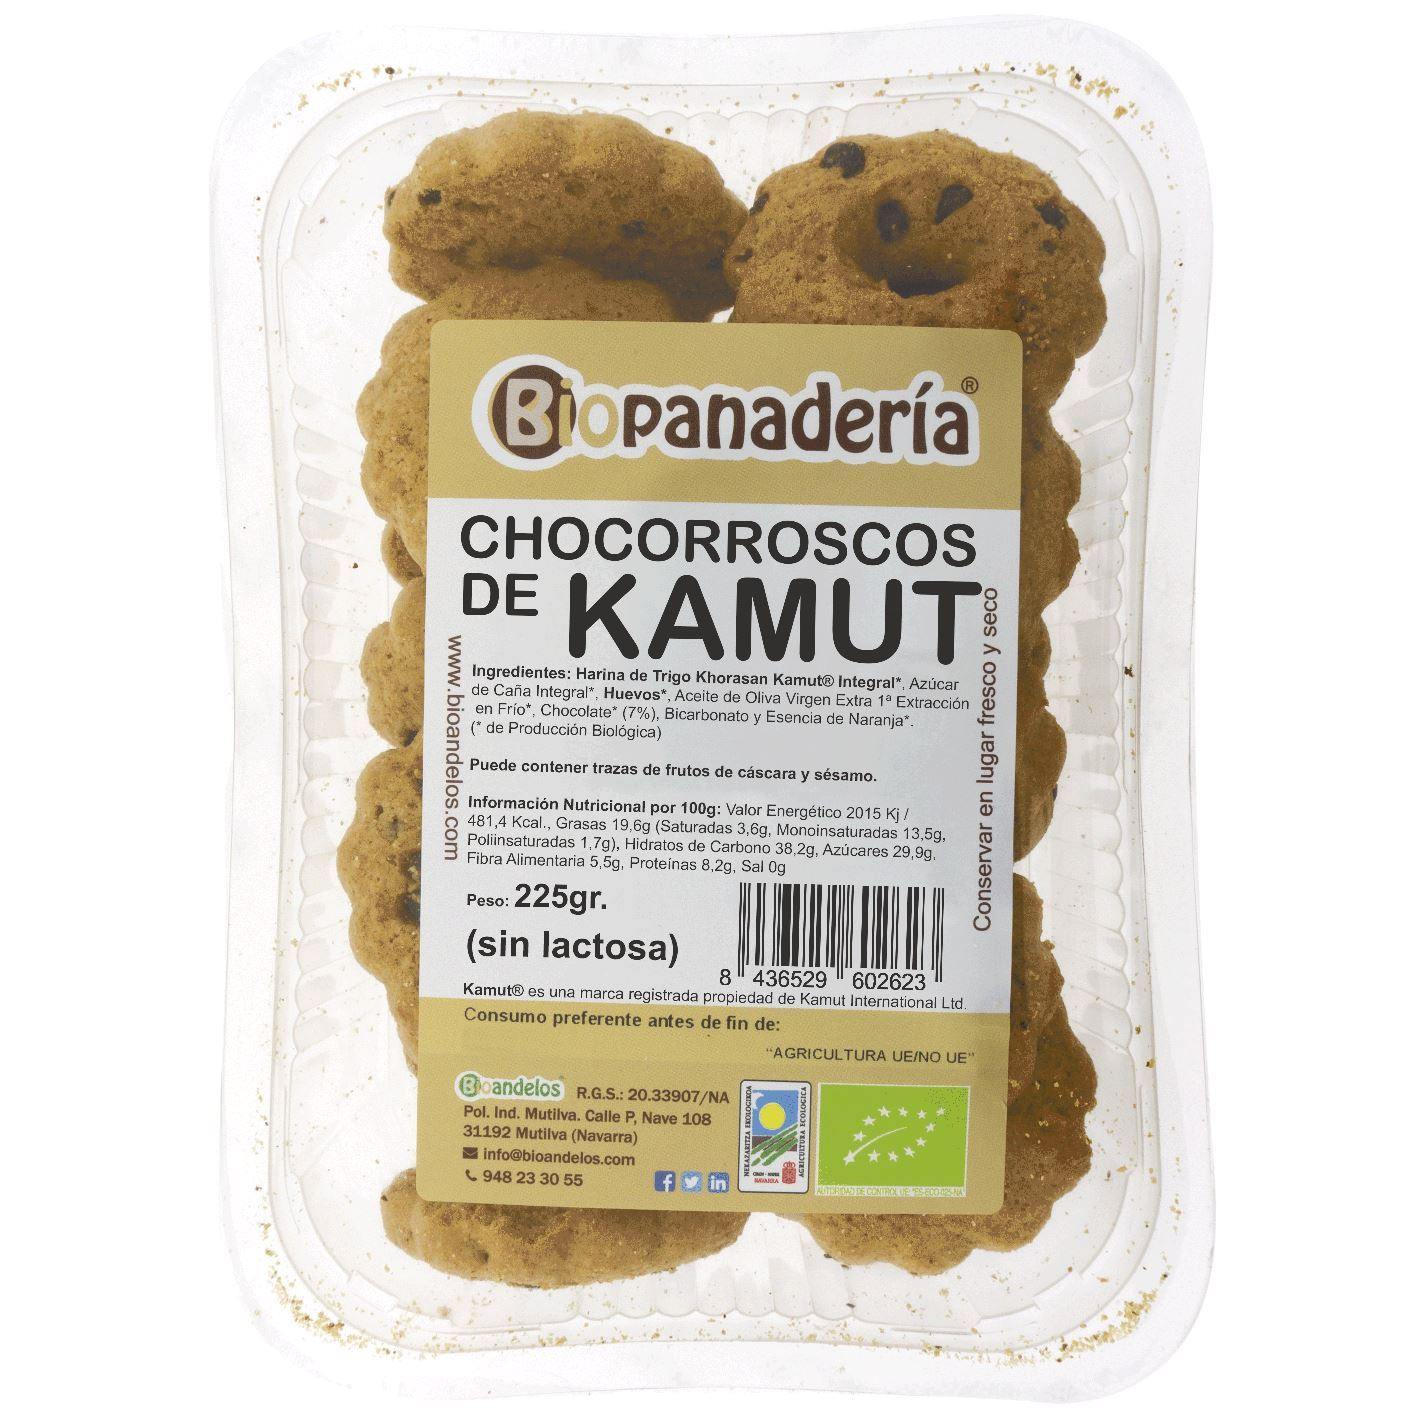 Chocorroscos de Trigo Khorasan Kamut® Integral Ecológicos